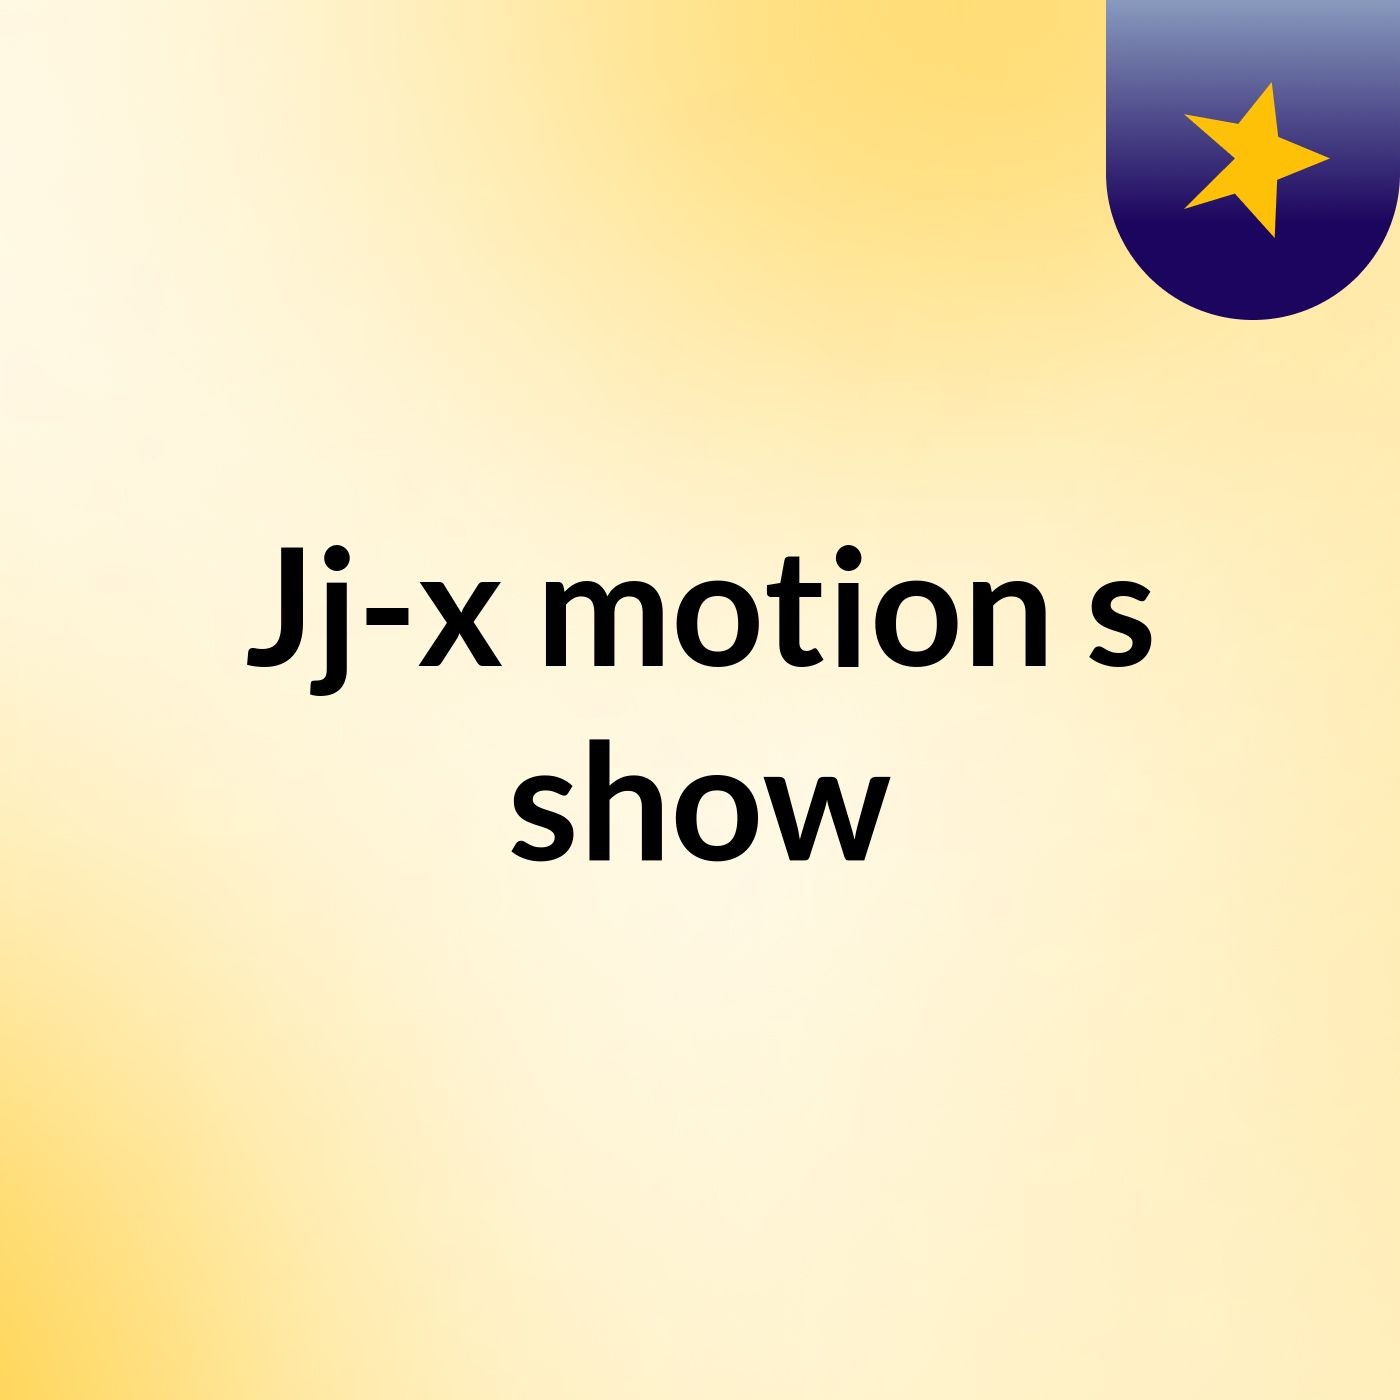 Jj-x motion's show